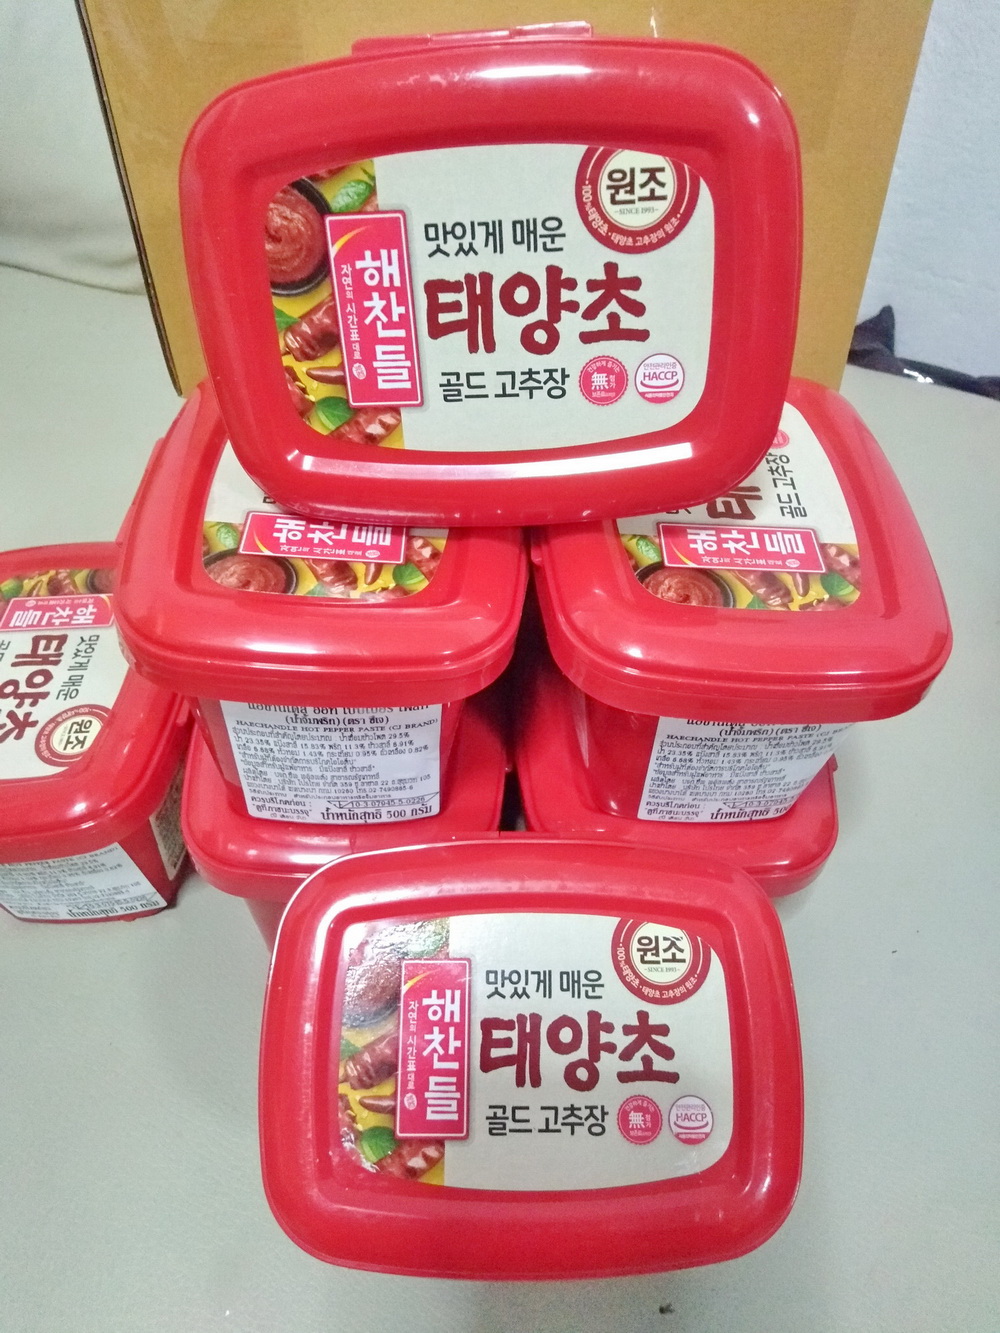 โกชูจัง Gochujang โคชูจัง กระปุกซีลจากโรงงาน ไม่ใช่แบบแบ่งขายคะ ซอสพริกเกาหลีโกชูจัง Gochujang โกชูจัง ซอสพริกเกาหลี ขนาด 500 กรัม น้ำจิ้มพริกเกาหลี Hot Pepper Paste